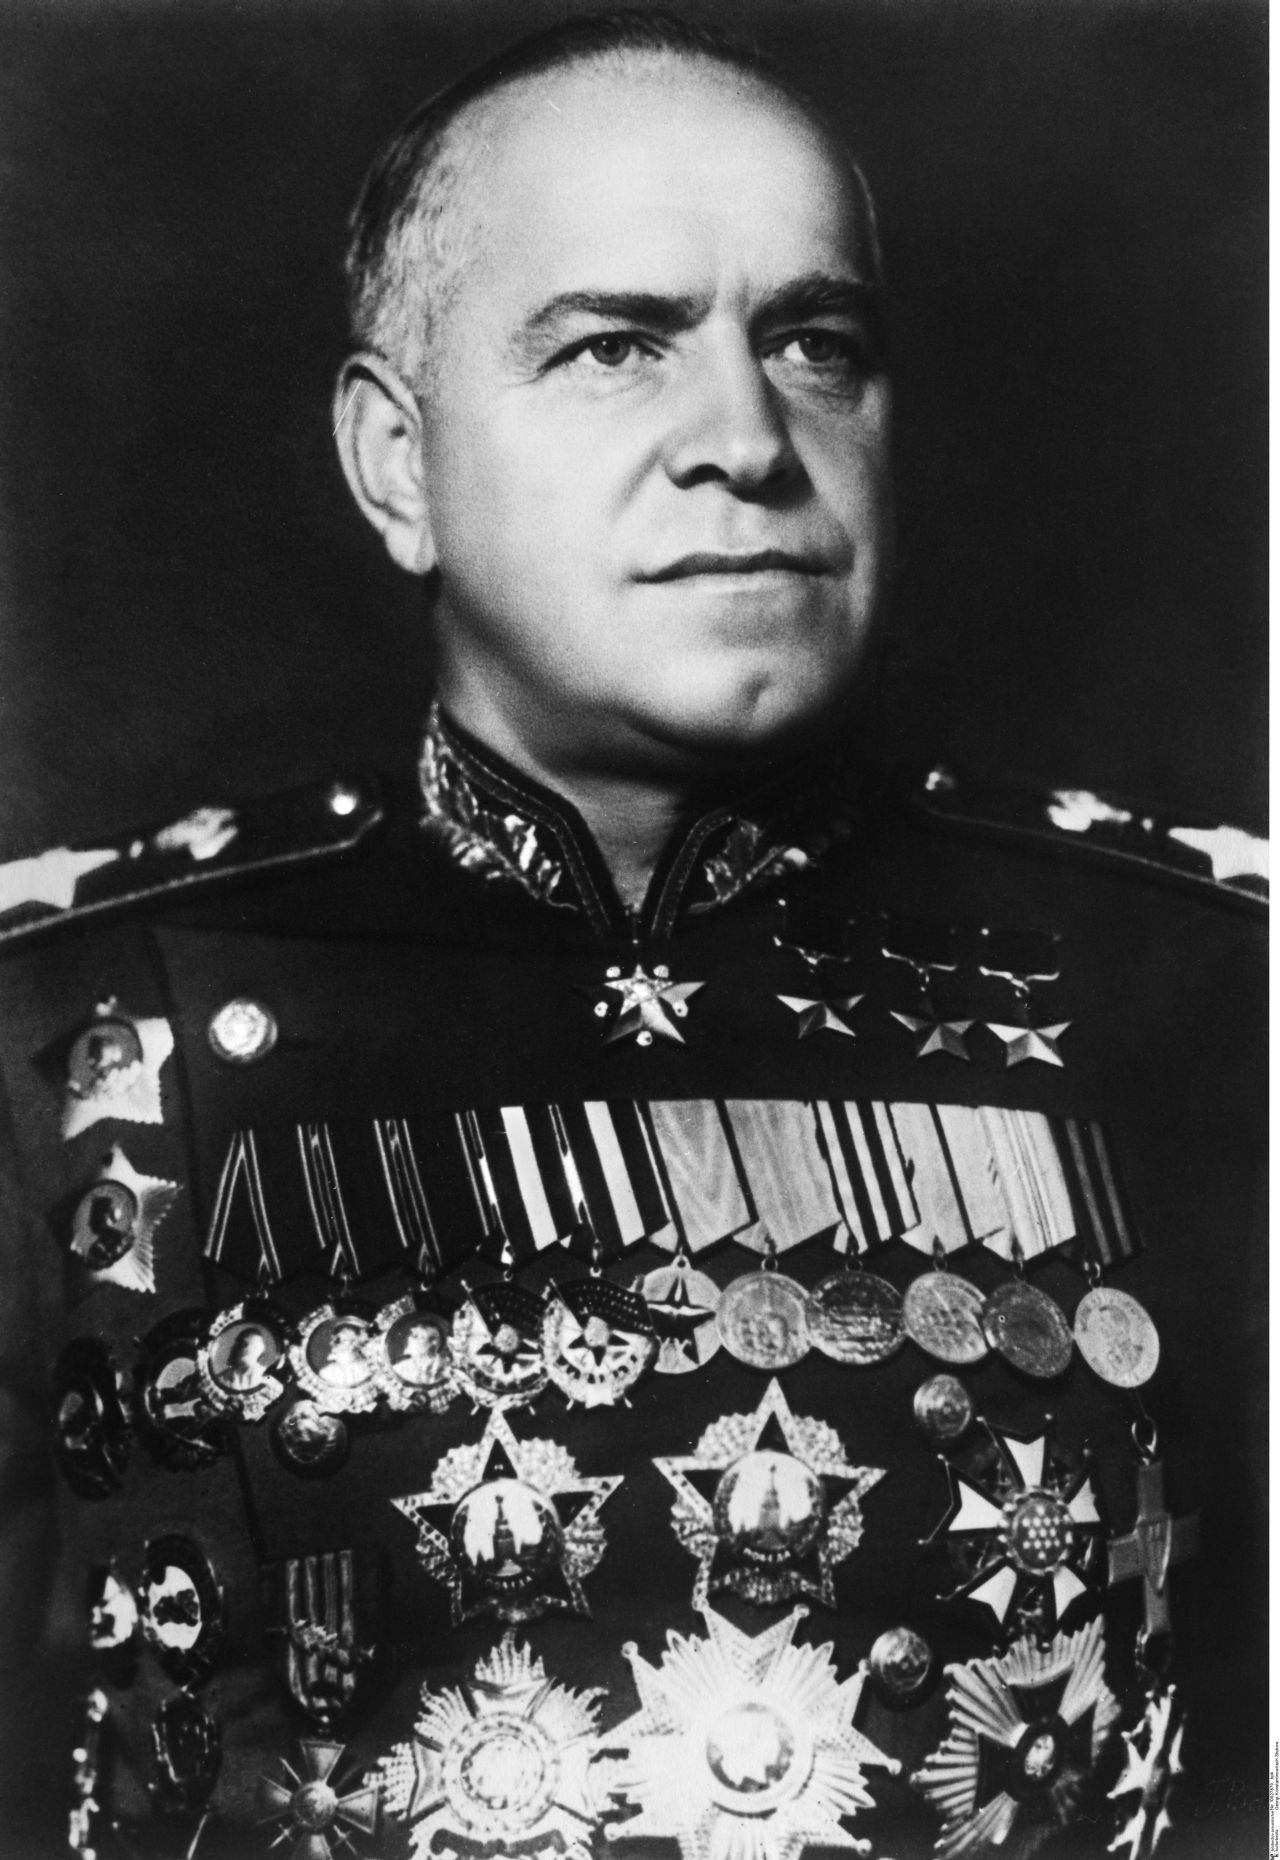 Porträtfoto von Georgij K. Schukow, Vorsitzender der sowjetischen Militäradministration, Juli/August 1945.